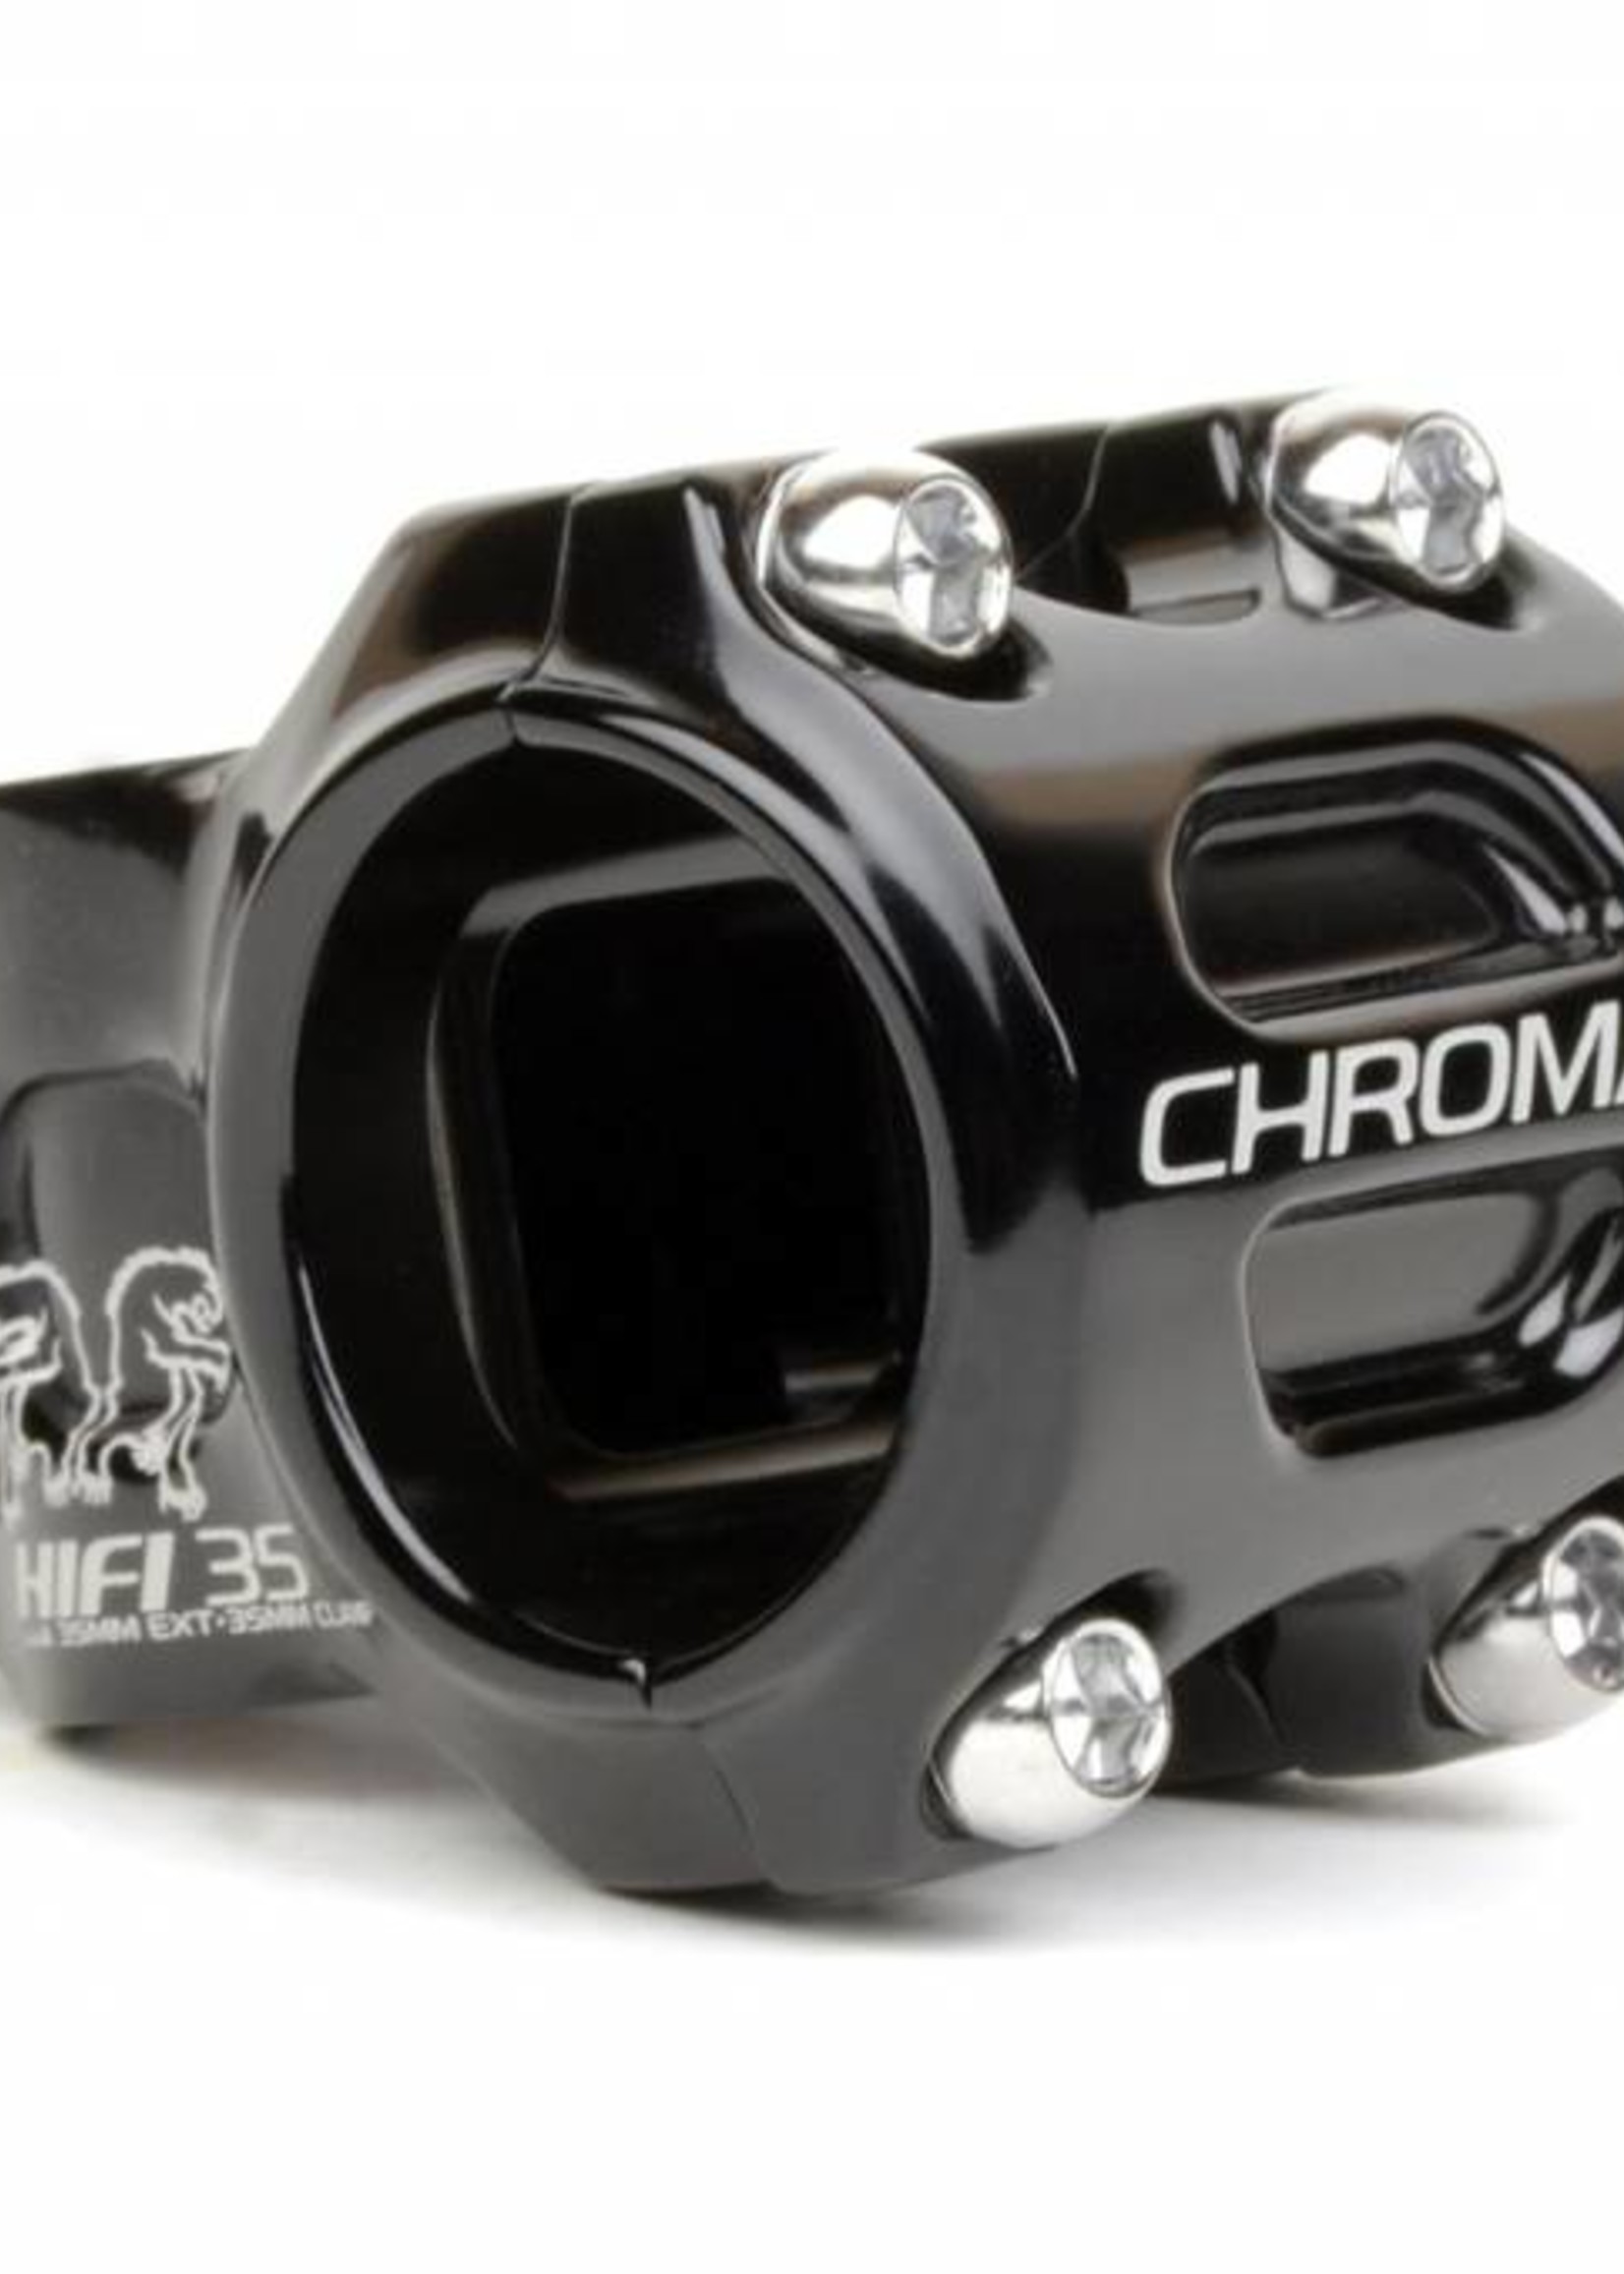 Chromag CHROMAG HIFI 35mm BAR CLAMP STEM